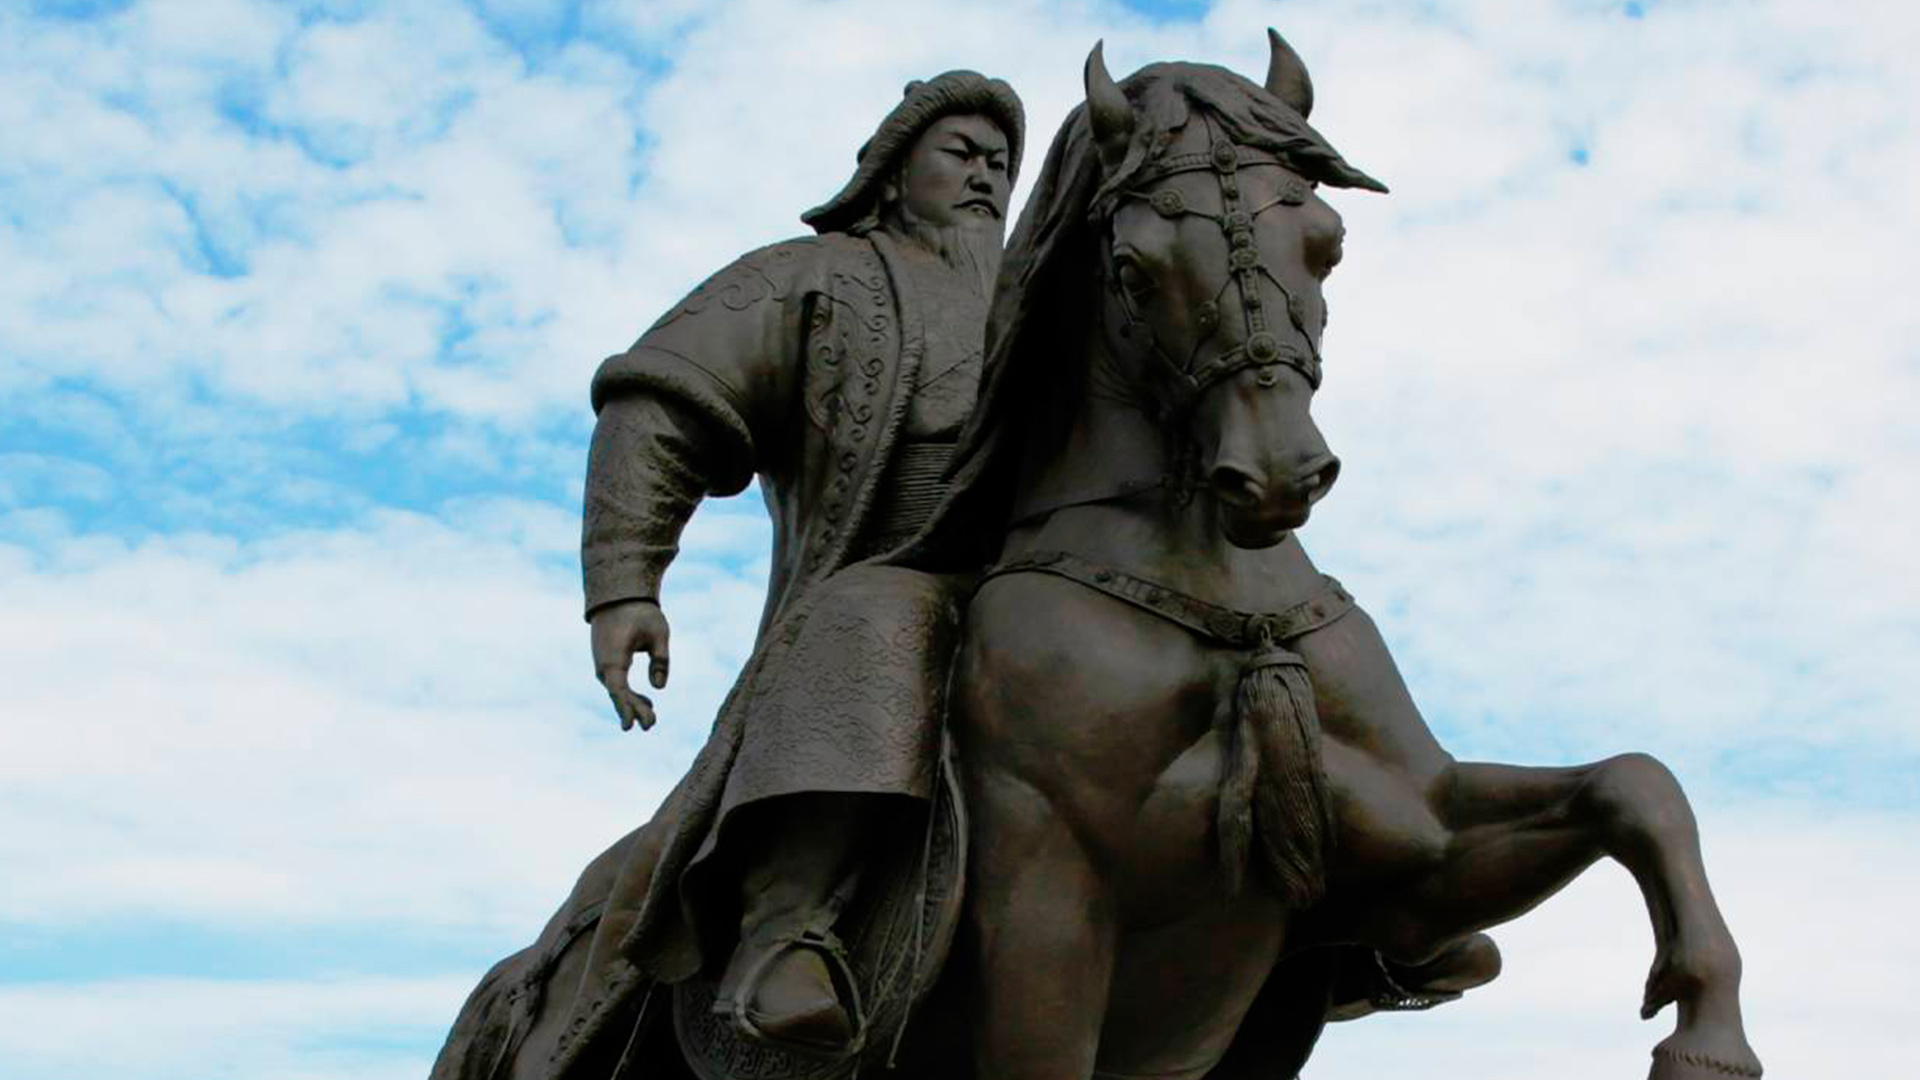 Монголия Чингисхана